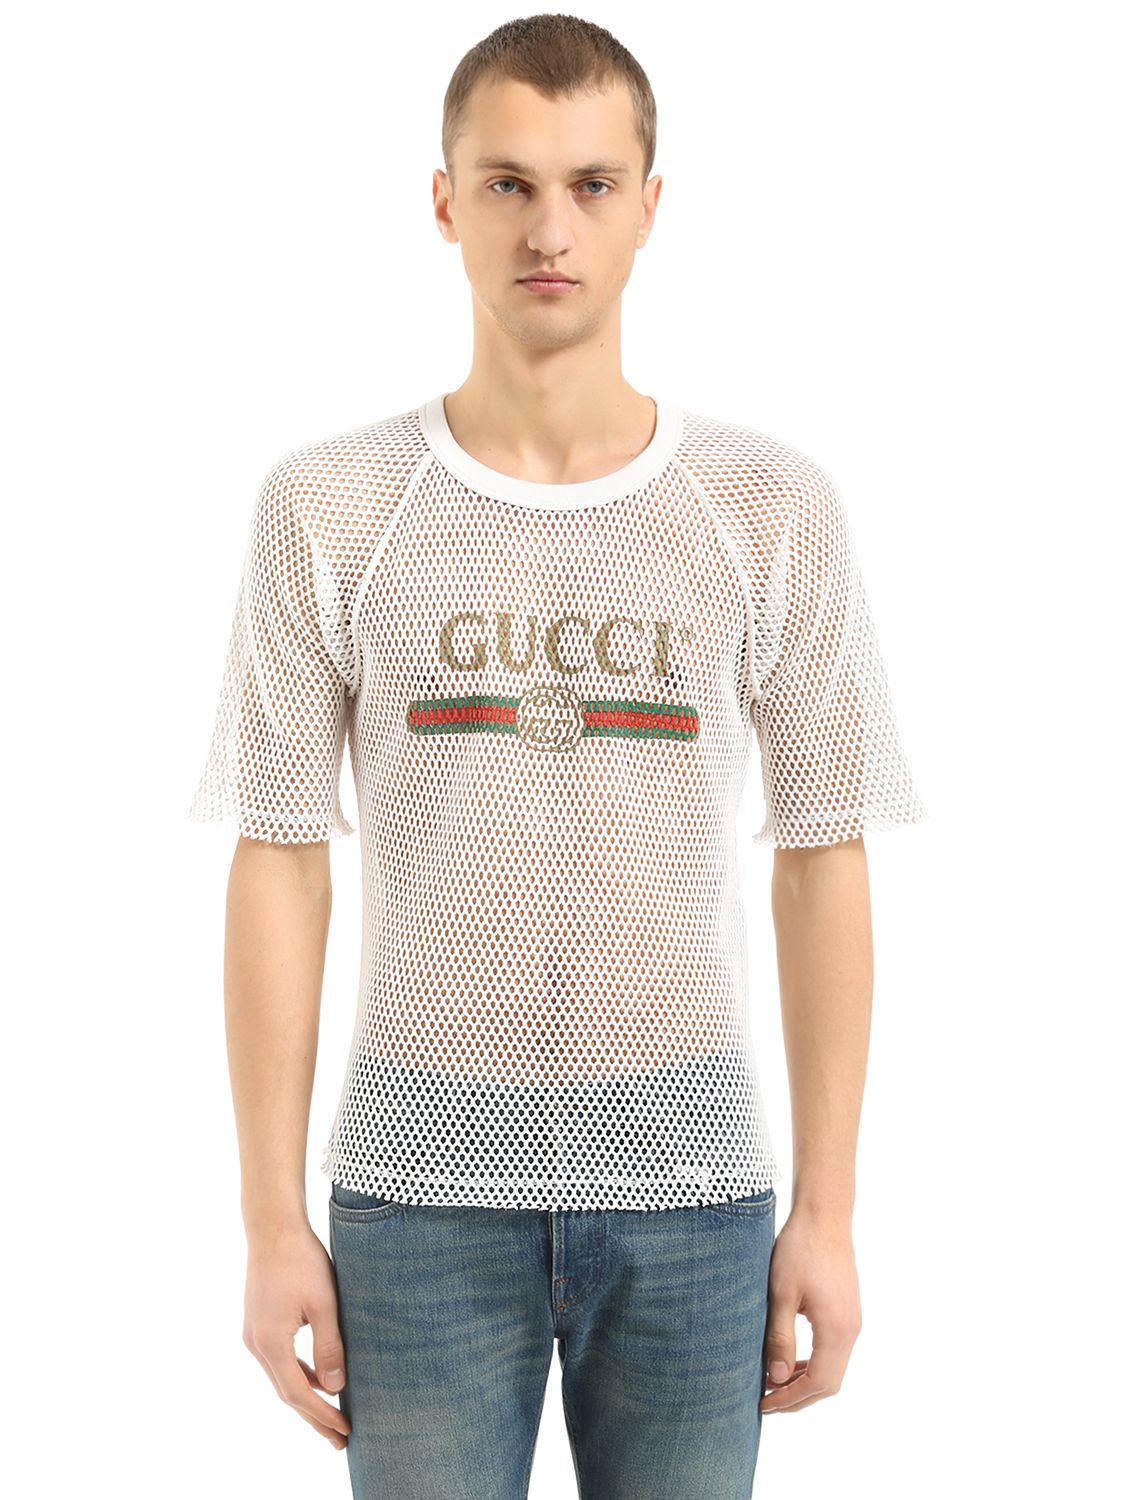 gucci mesh t shirt